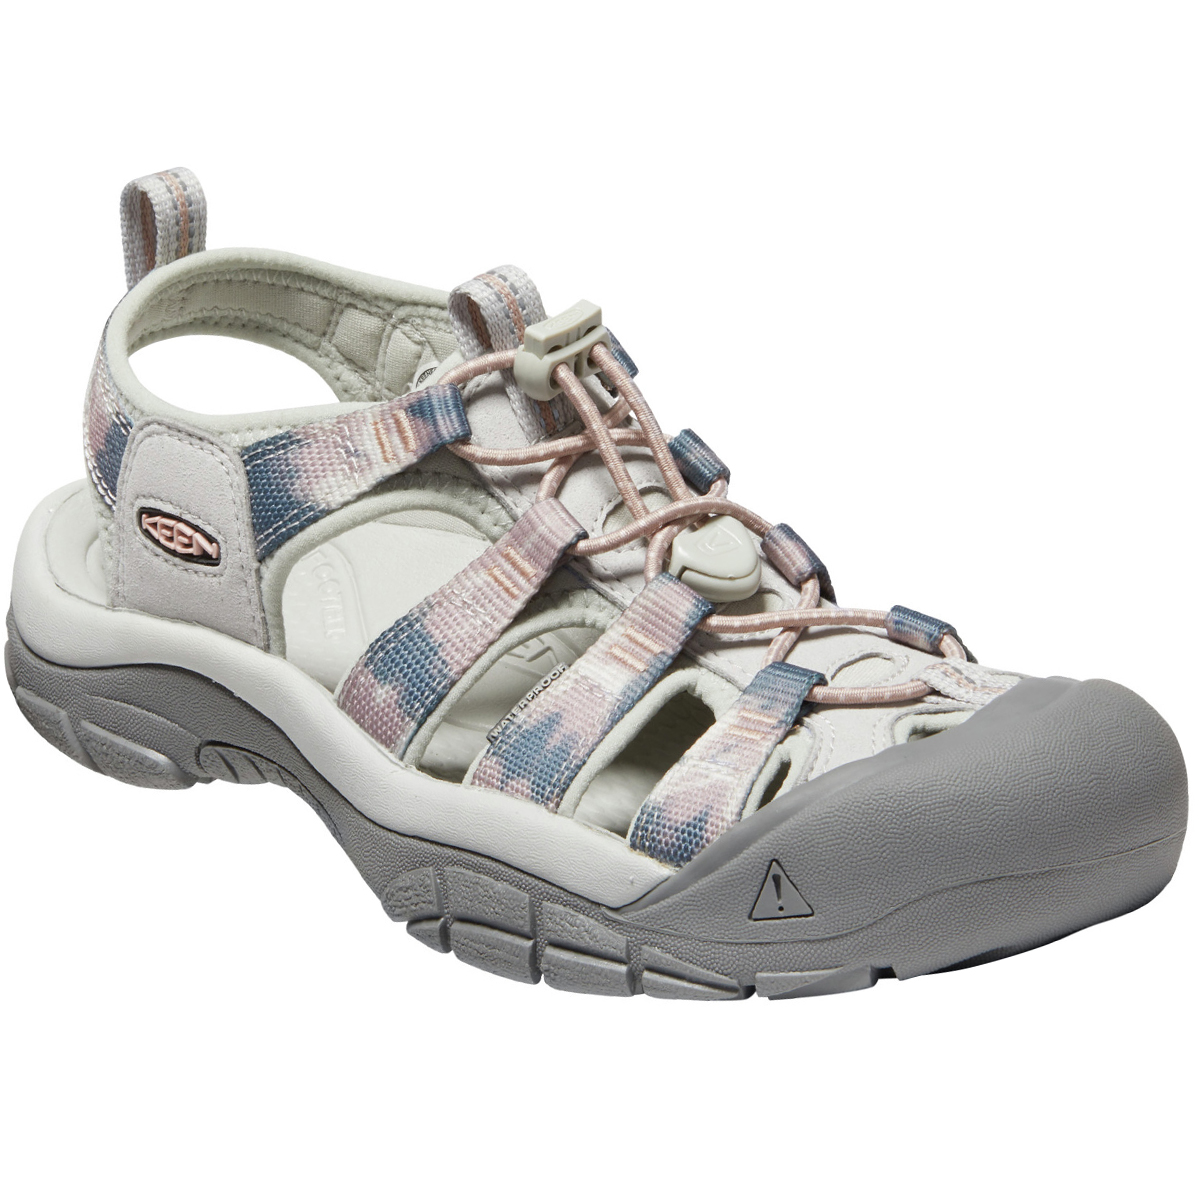 Keen Women's Newport H2 Hiking Sandals - Size 10